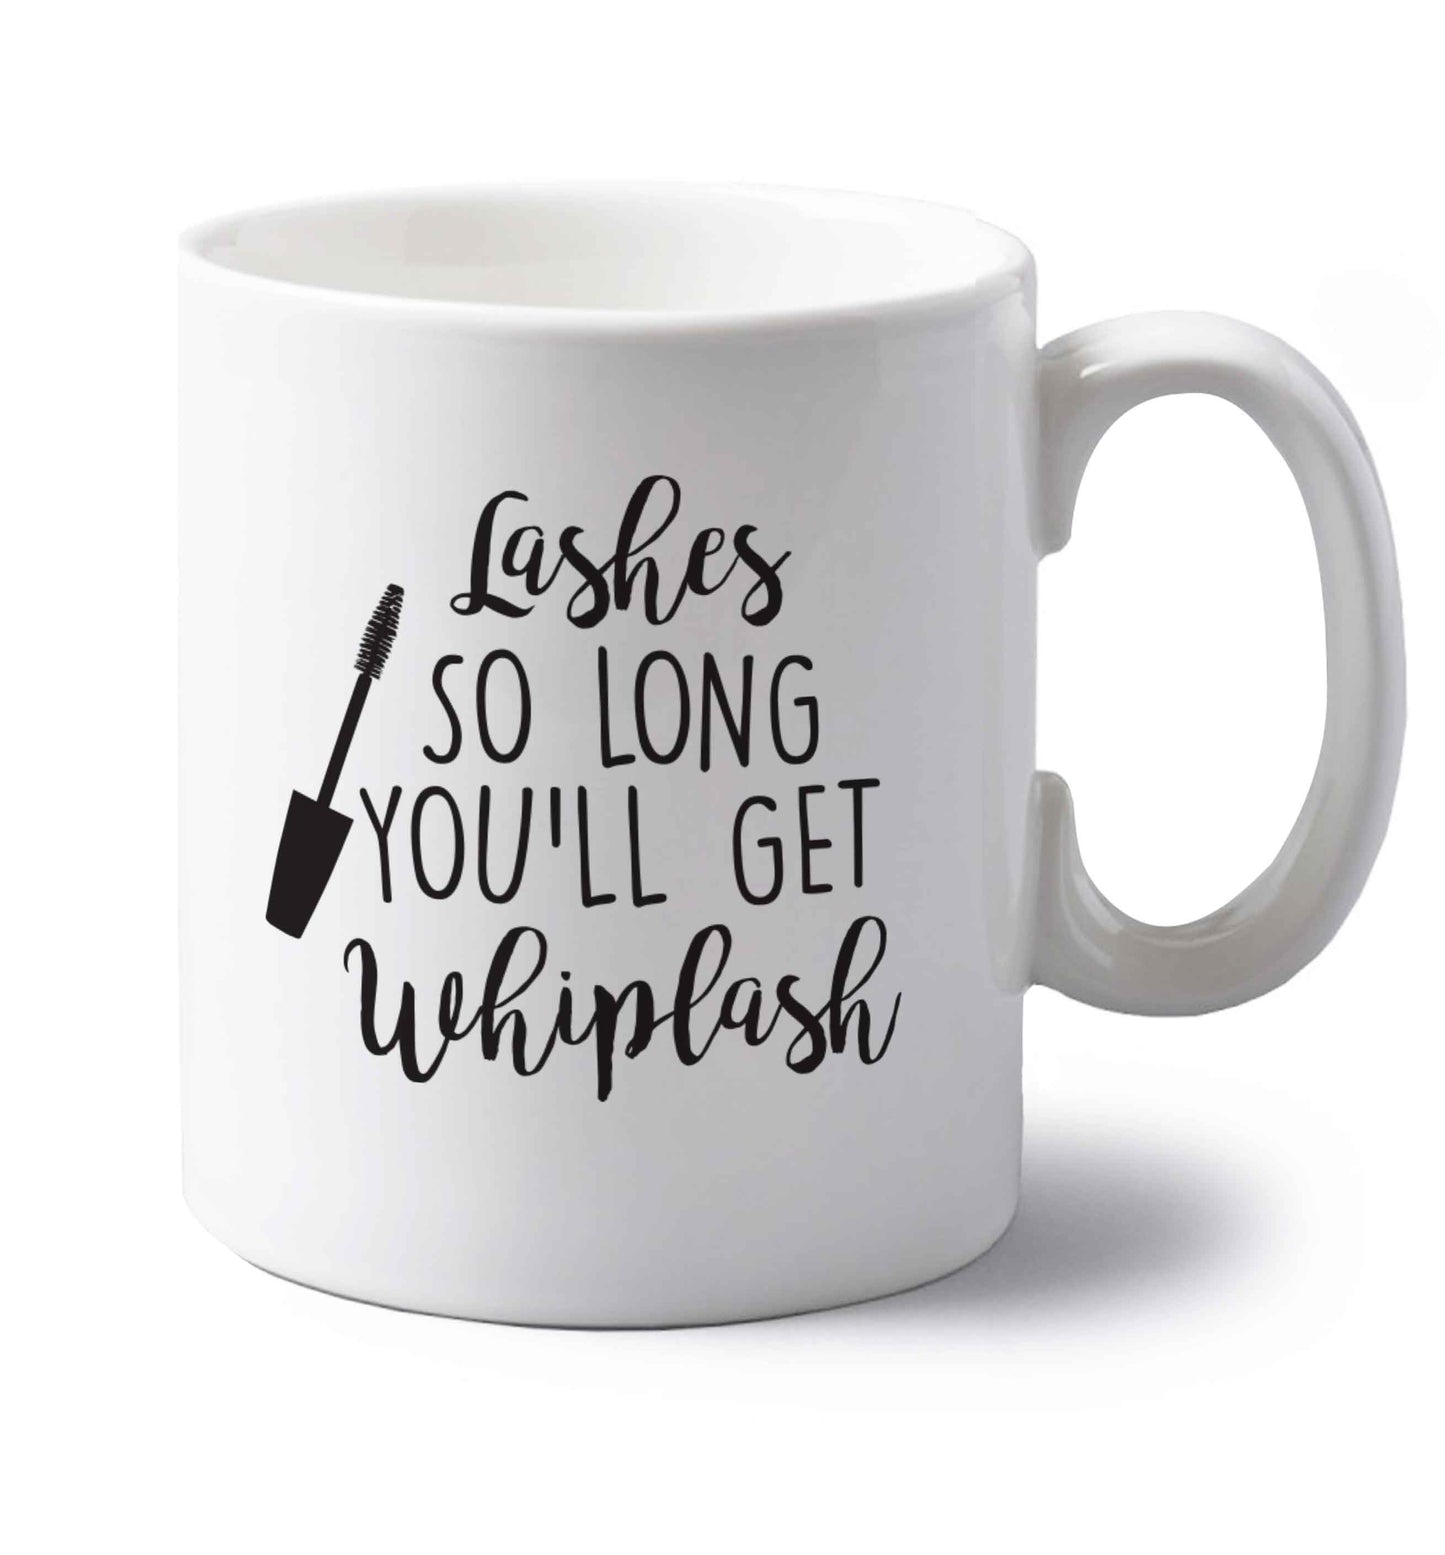 Lashes so long you'll get whiplash left handed white ceramic mug 